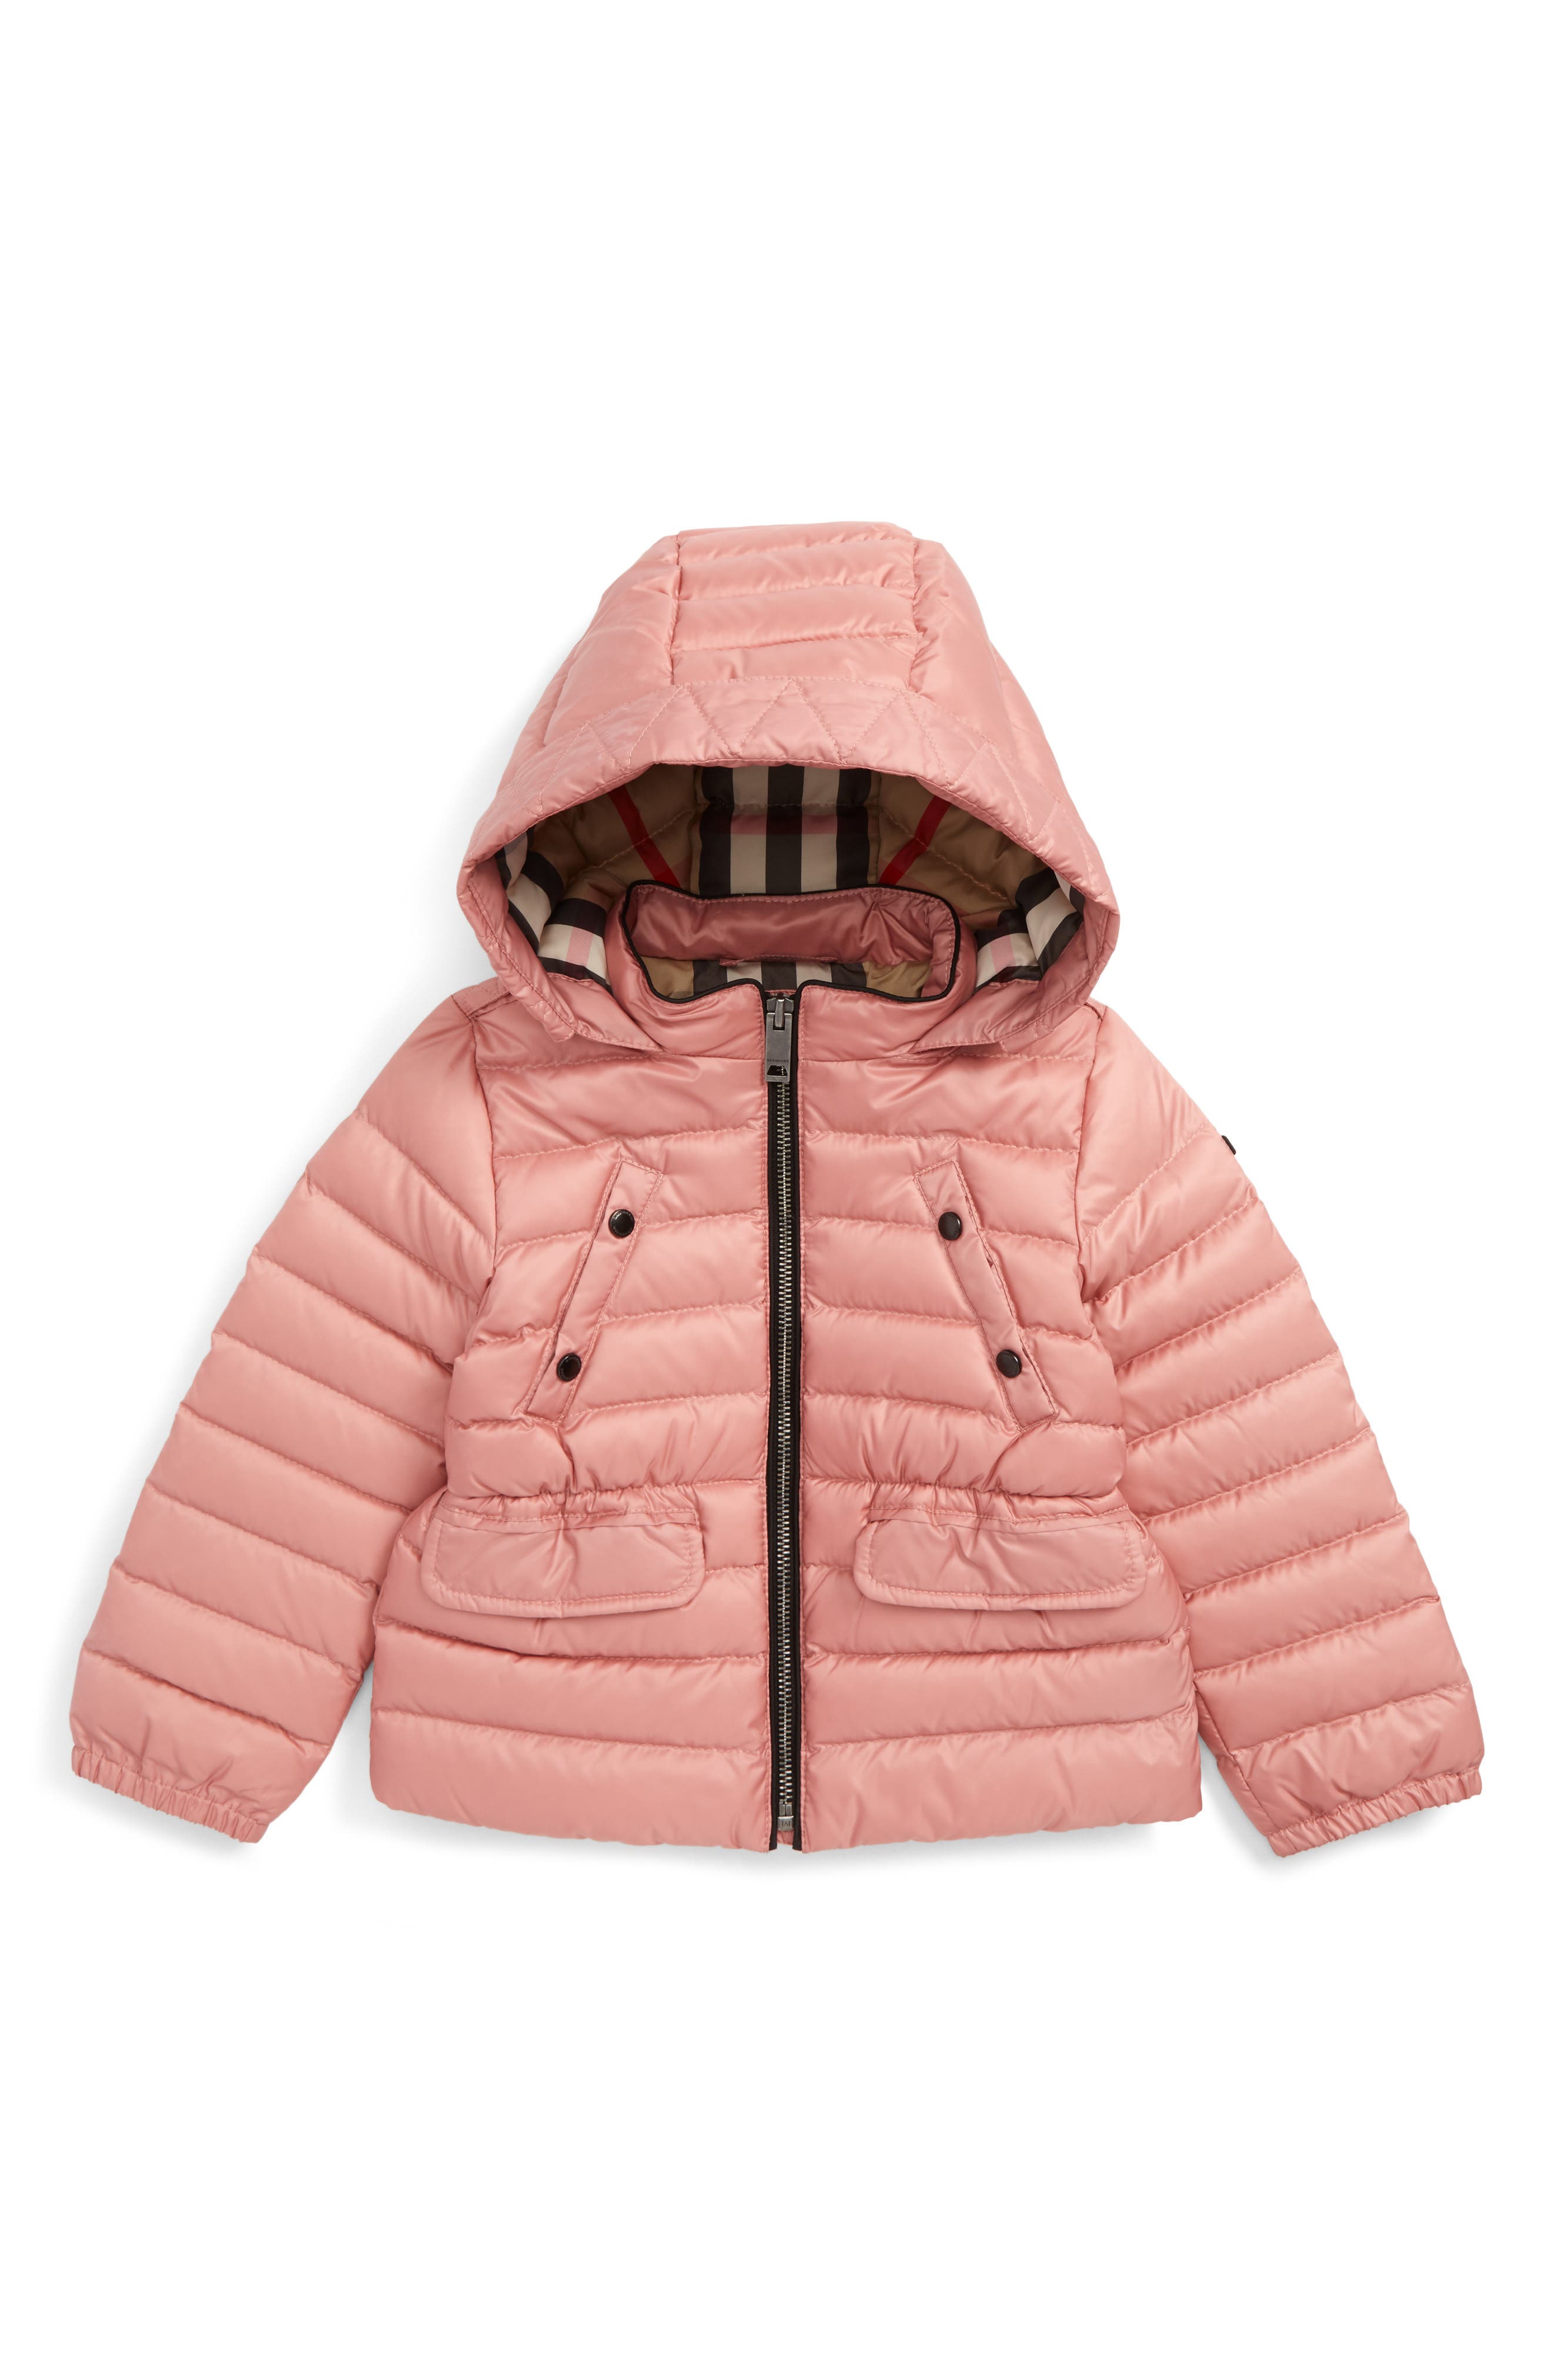 burberry toddler girl coat